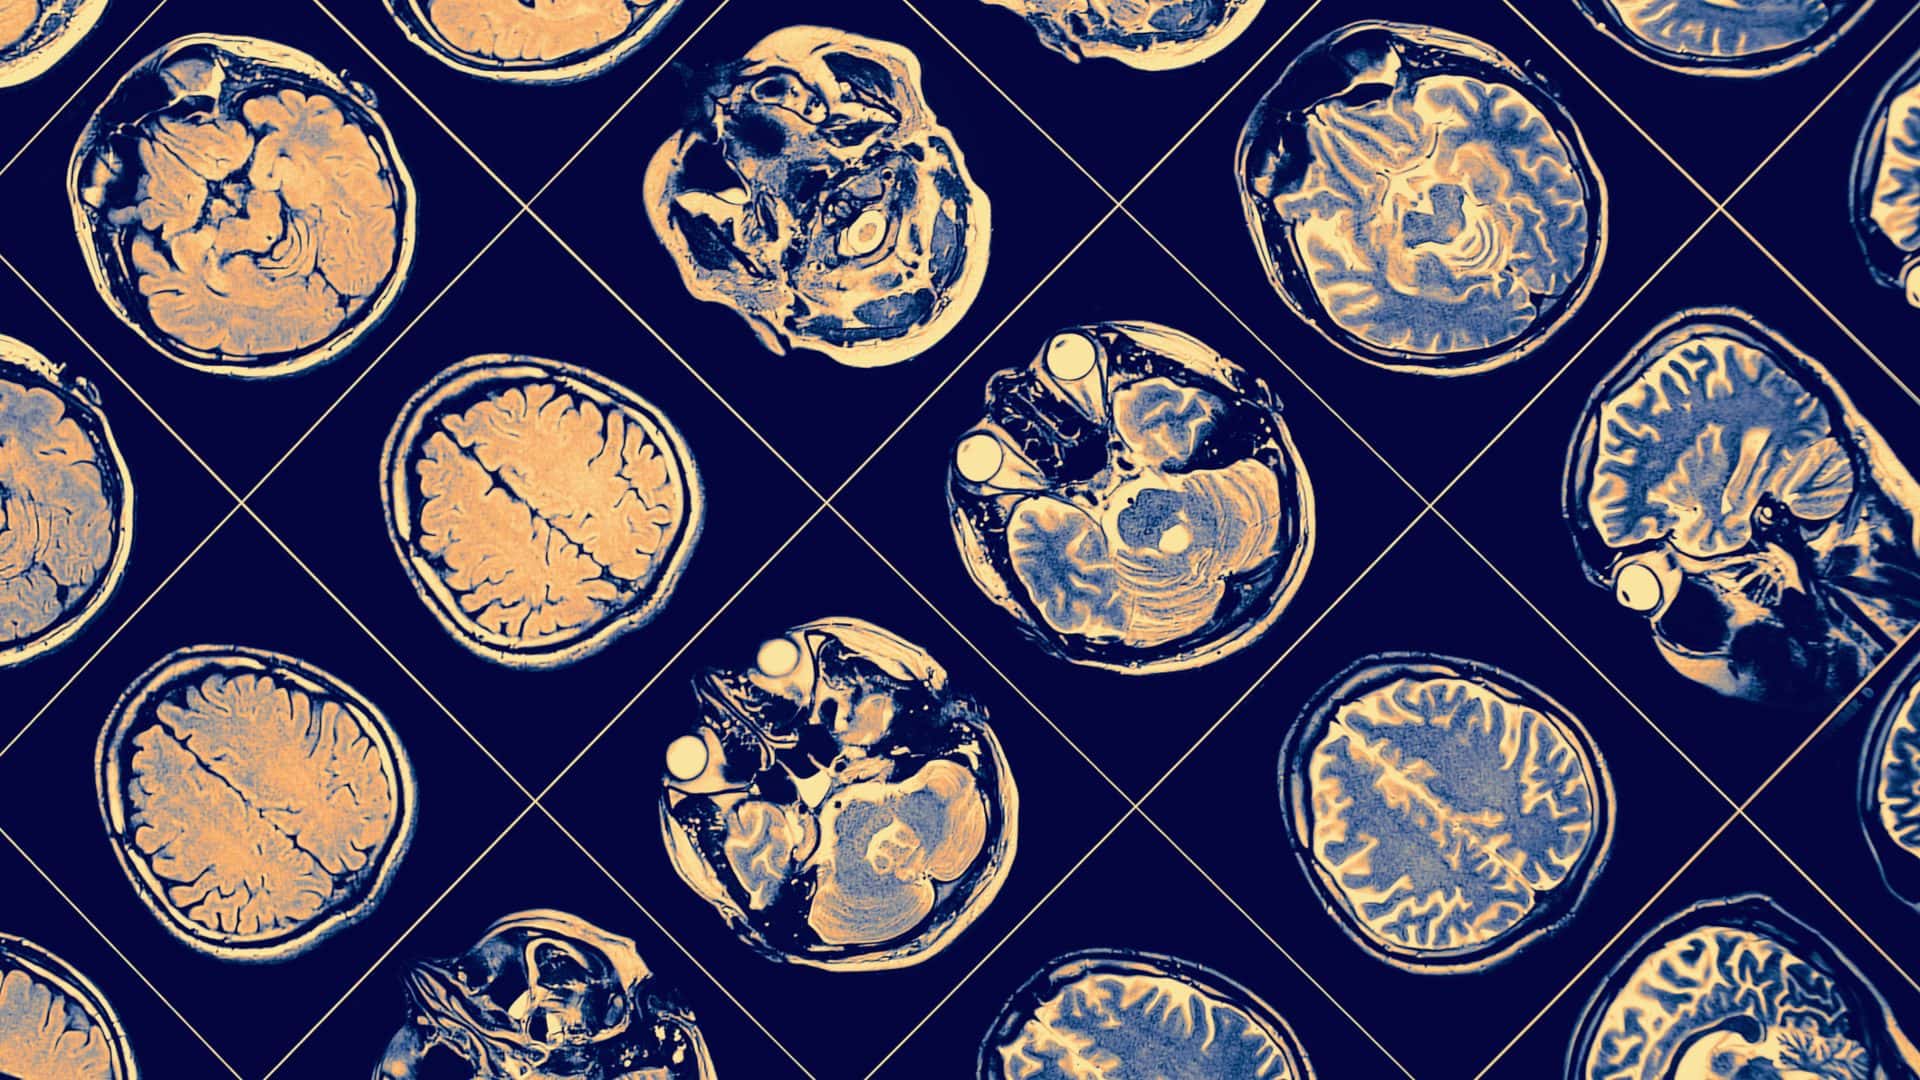 Imágenes de cerebros con párkinson y demencia.